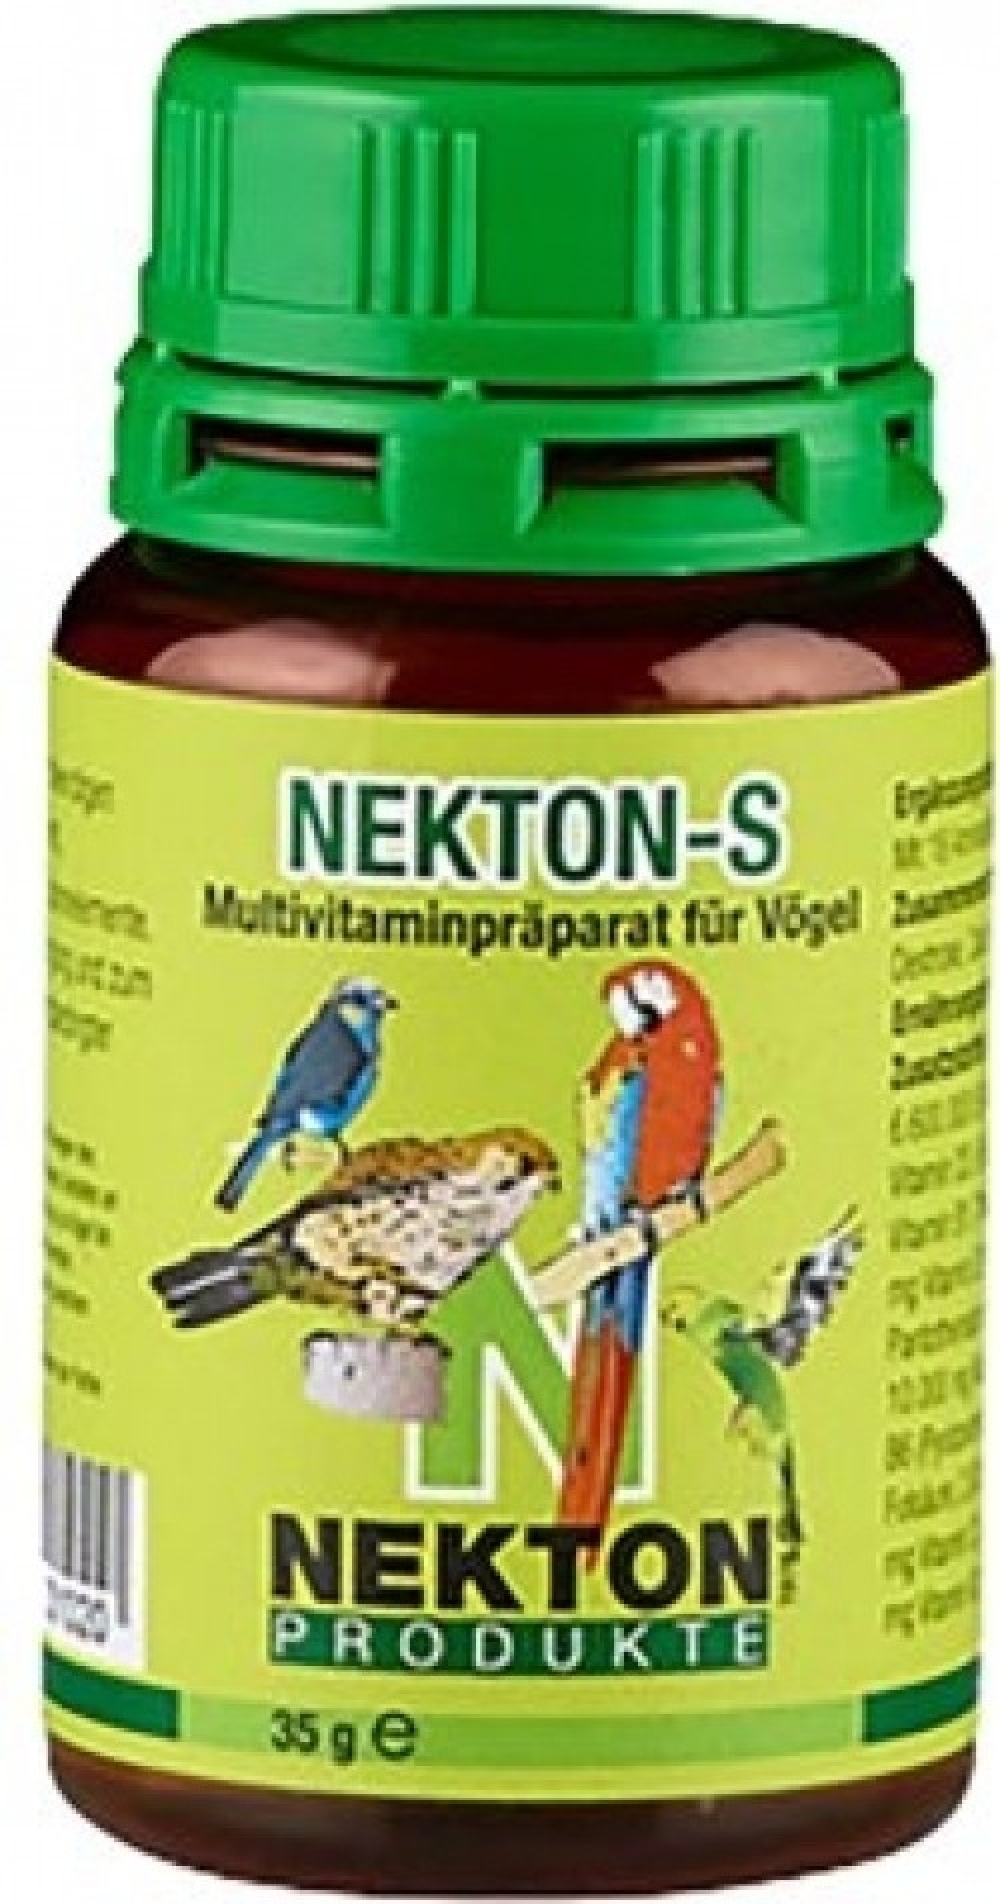 NEKTON-S inneholder alle viktige vitaminer og er også beriket med aminosyrer, mineraler og sporstoffer. 